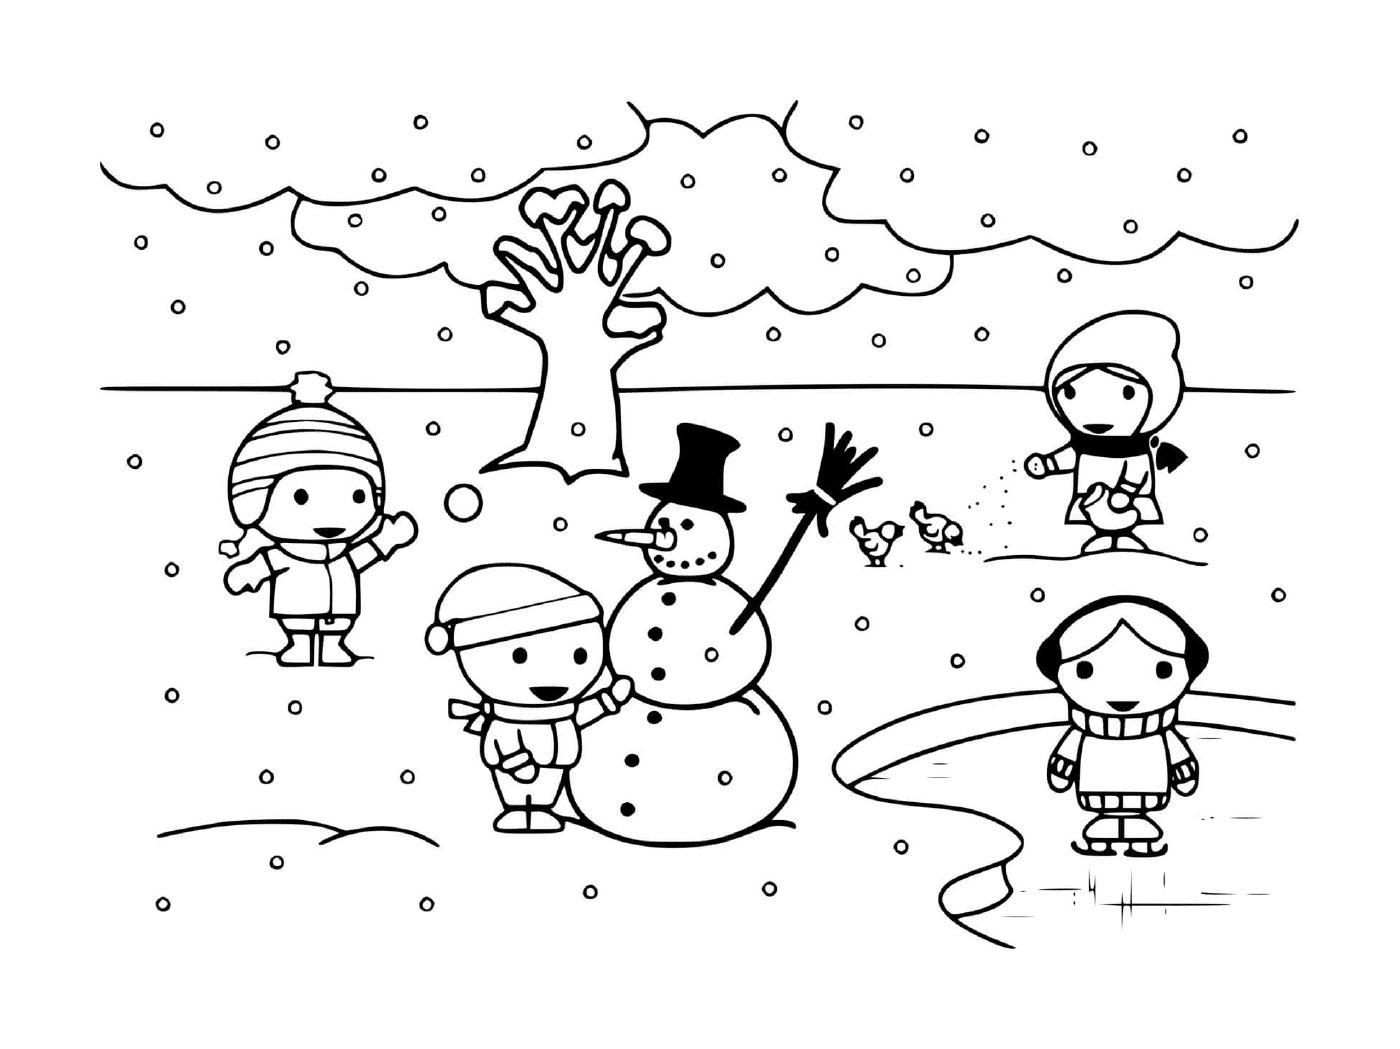  I bambini giocano con la neve in inverno 